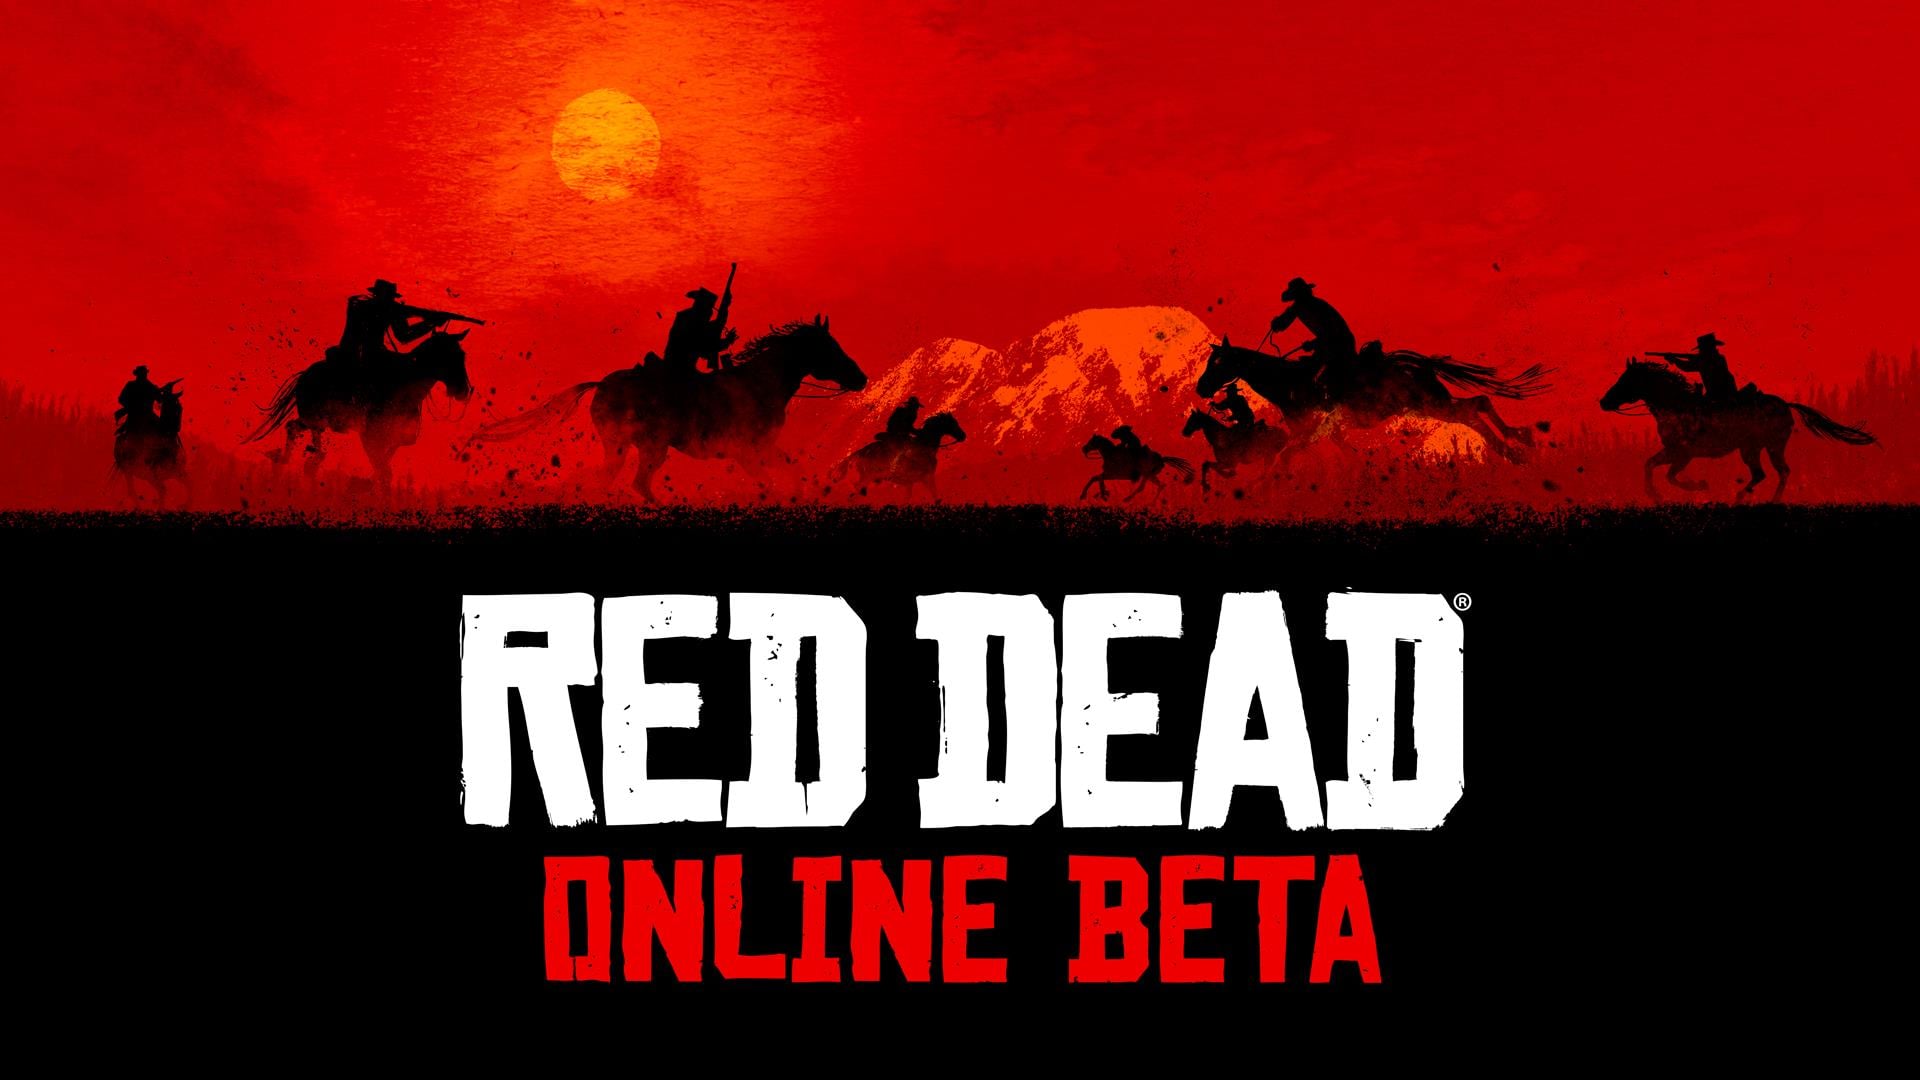 Red Dead Redemption Online Beta Starts Tomorrow